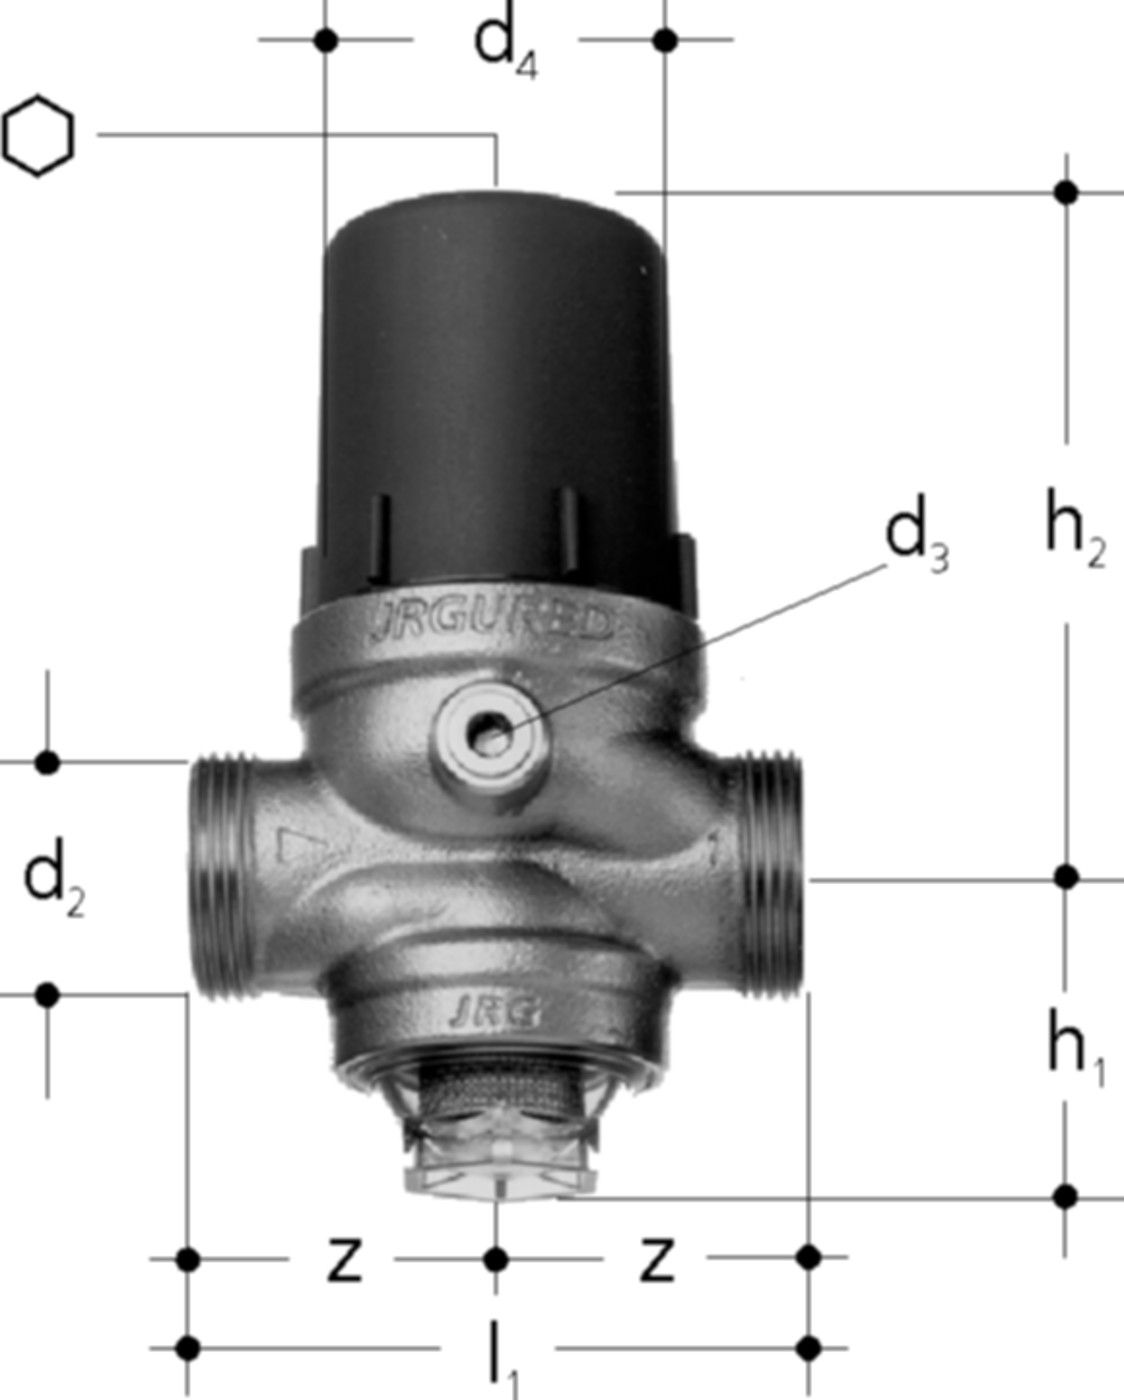 Druckred-Ventil DN15 1303.015 1/2" / G 3/4" , ohne Verschraubung - JRG Armaturen